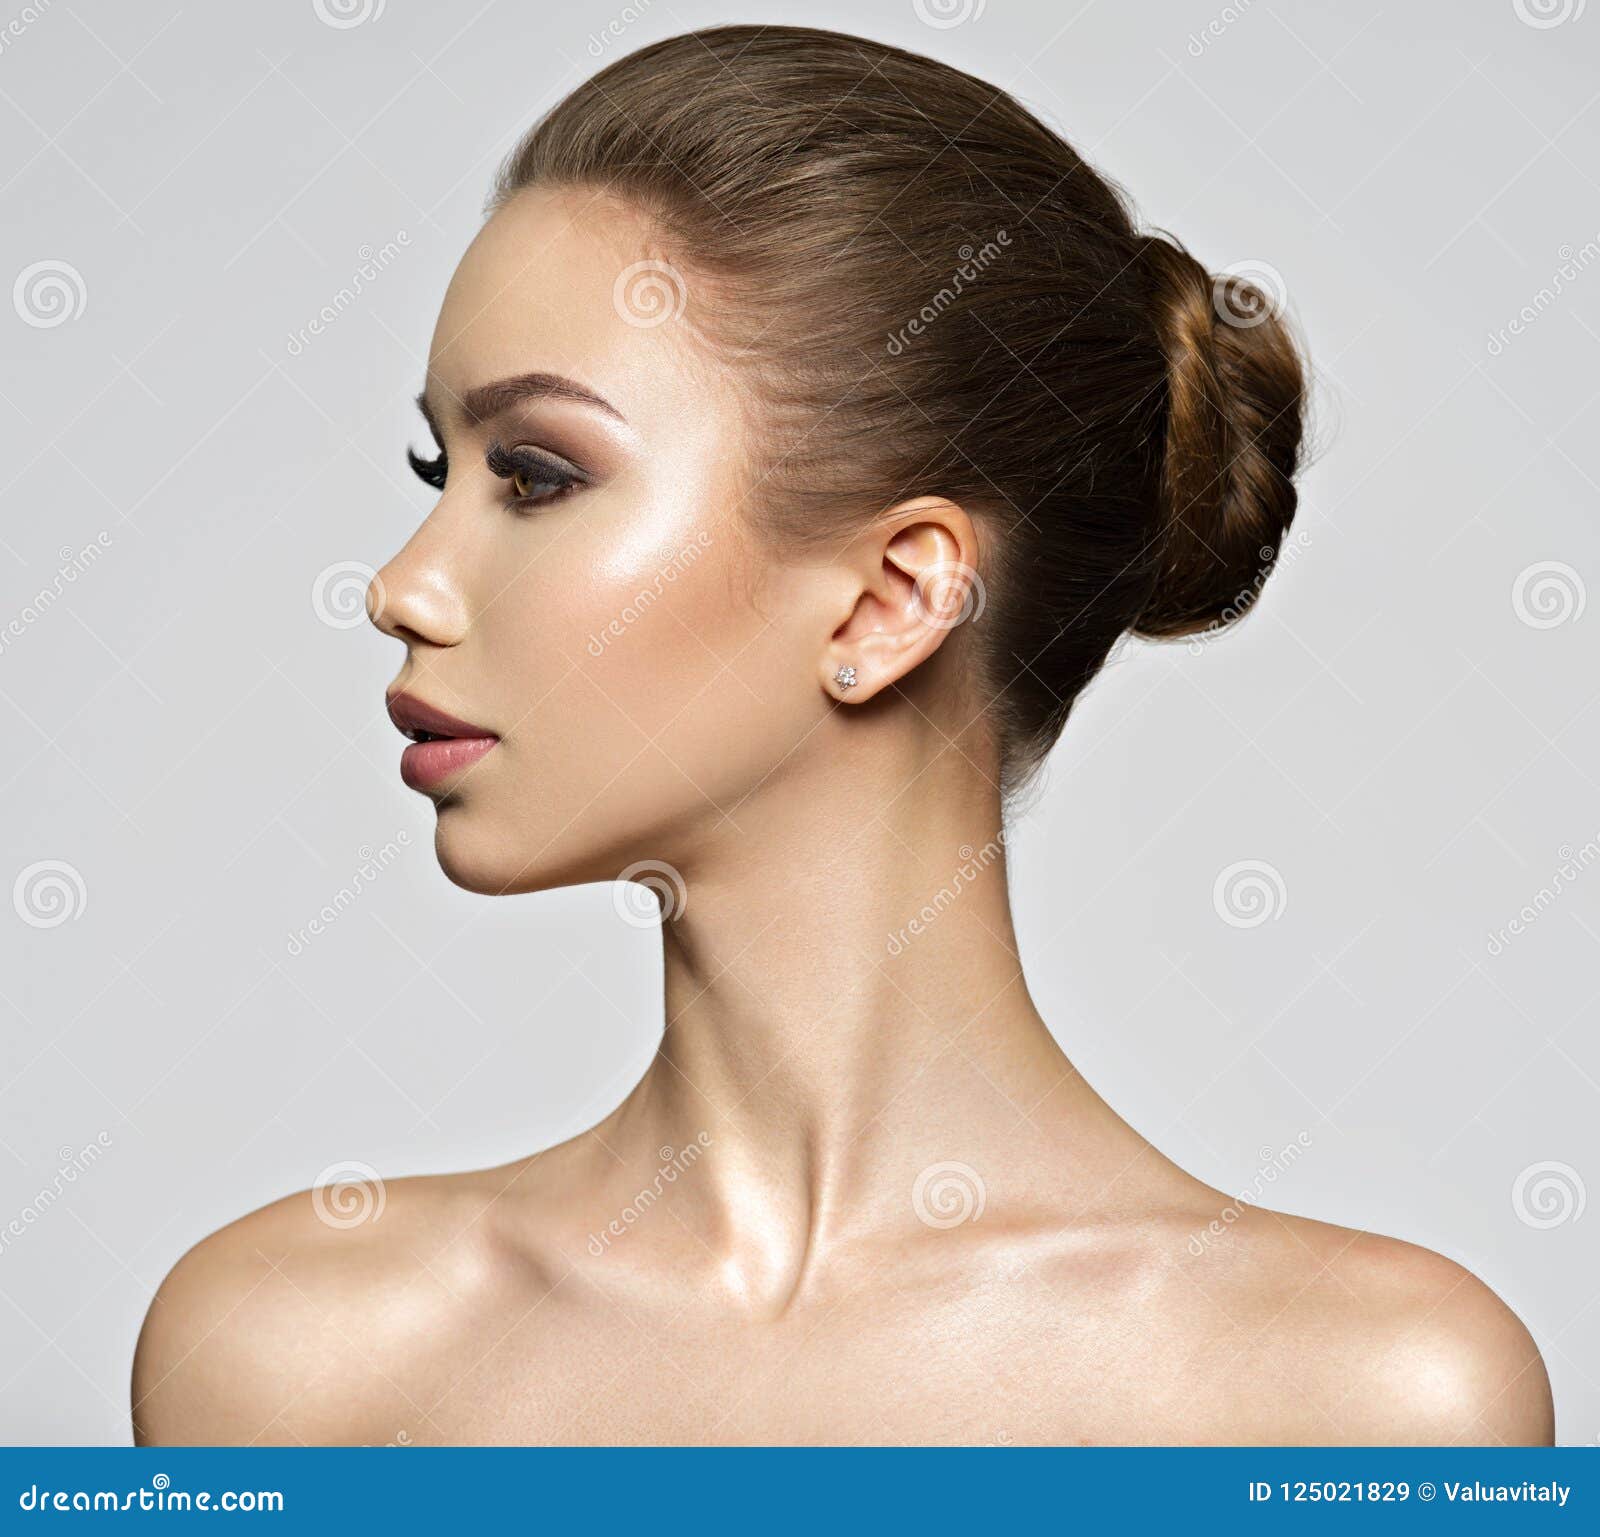 Beautiful Young Woman Profile View Stock Image Image Of Closeup Makeup